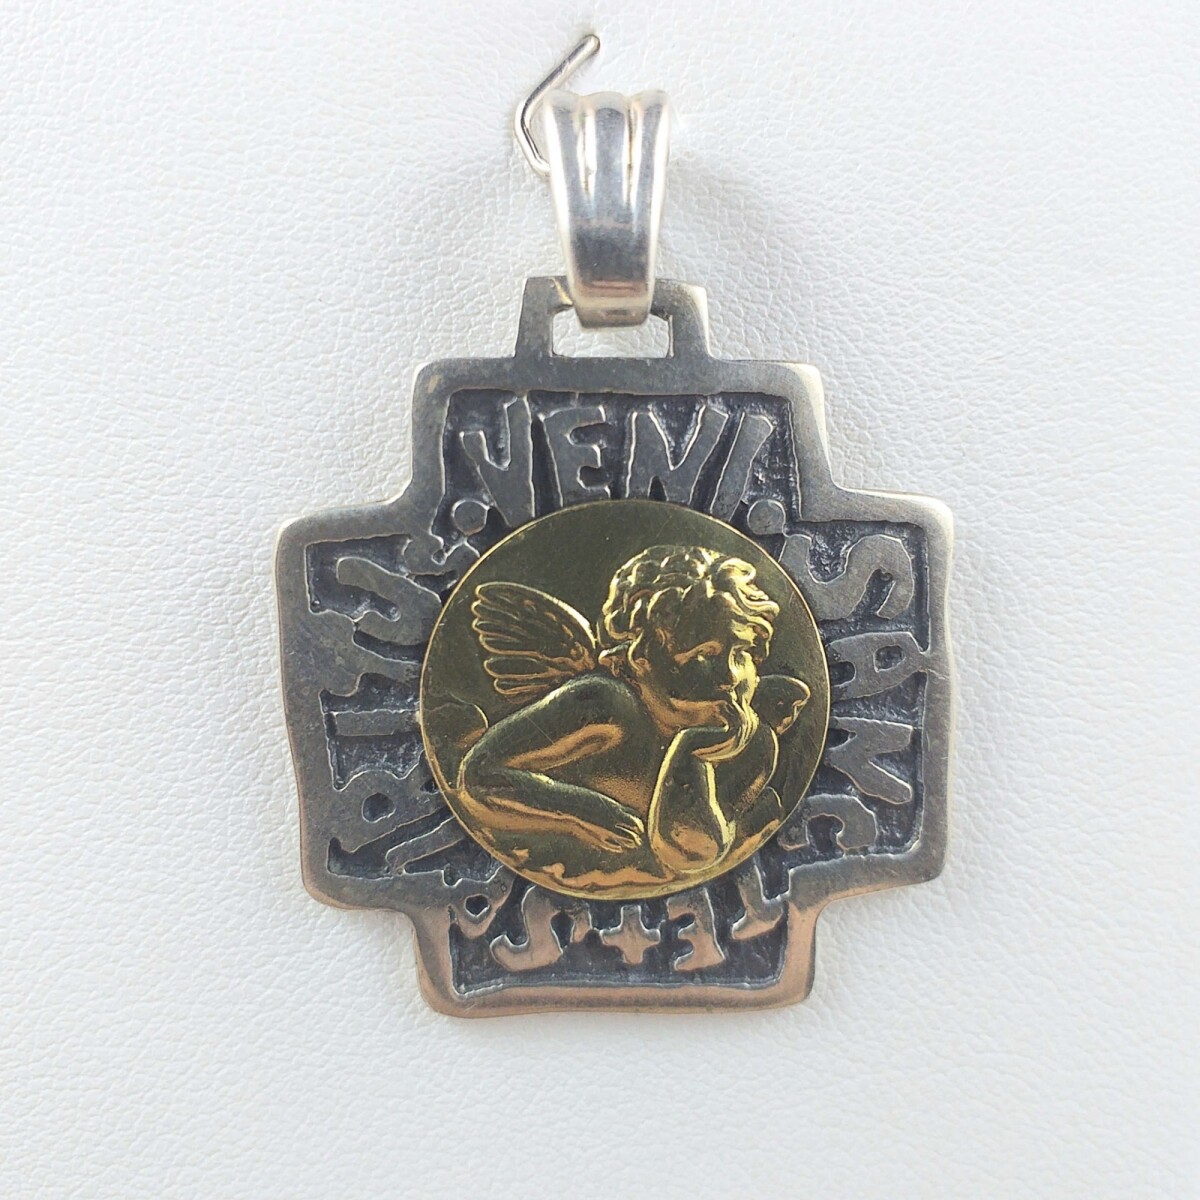 Cruz de plata 925 Angel San Rafael, con double en oro de 18k, Medidas largo 2 cm, ancho 2 cm, espesor 2 mm. 